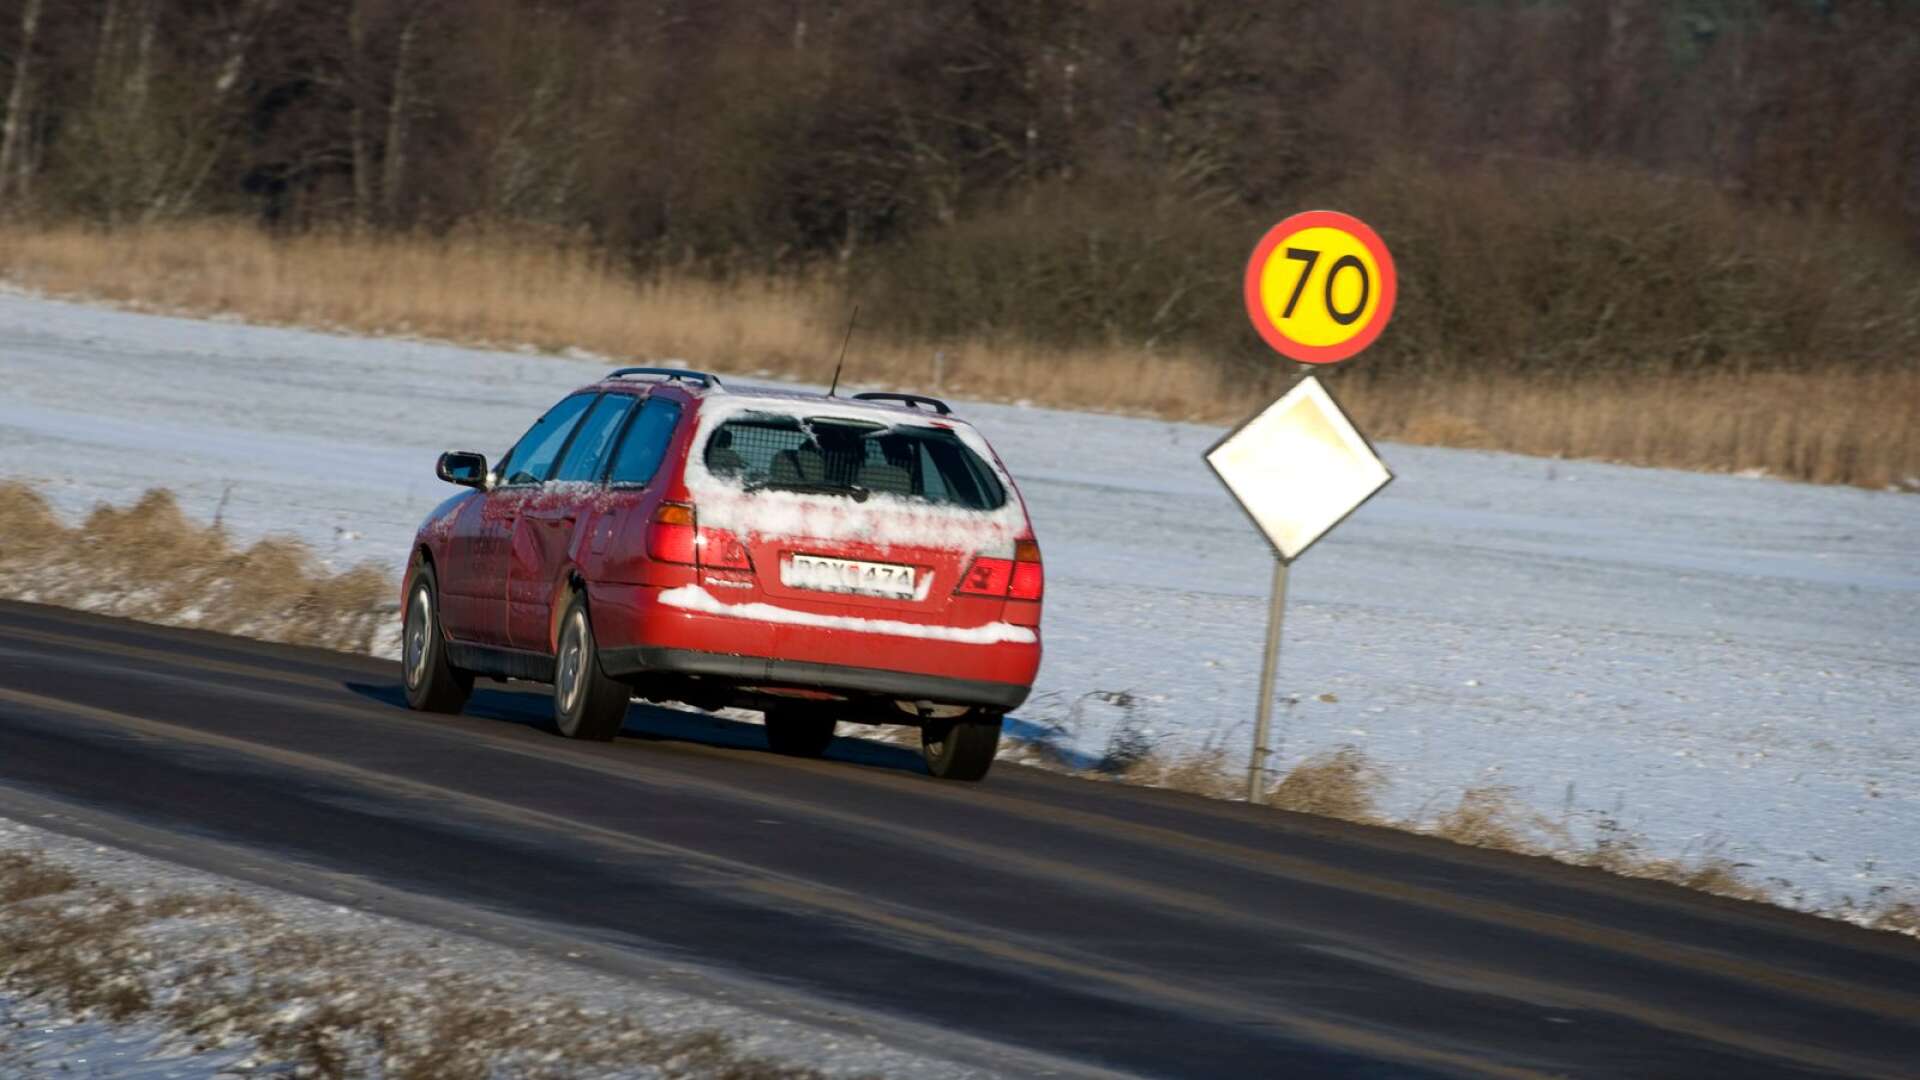 En sänkt hastighet leder till en minskad tillgänglighet inom länet, till intilliggande län och våra storstadsområden, skriver Stina Höök med flera. Foto Anders Wiklund/TT